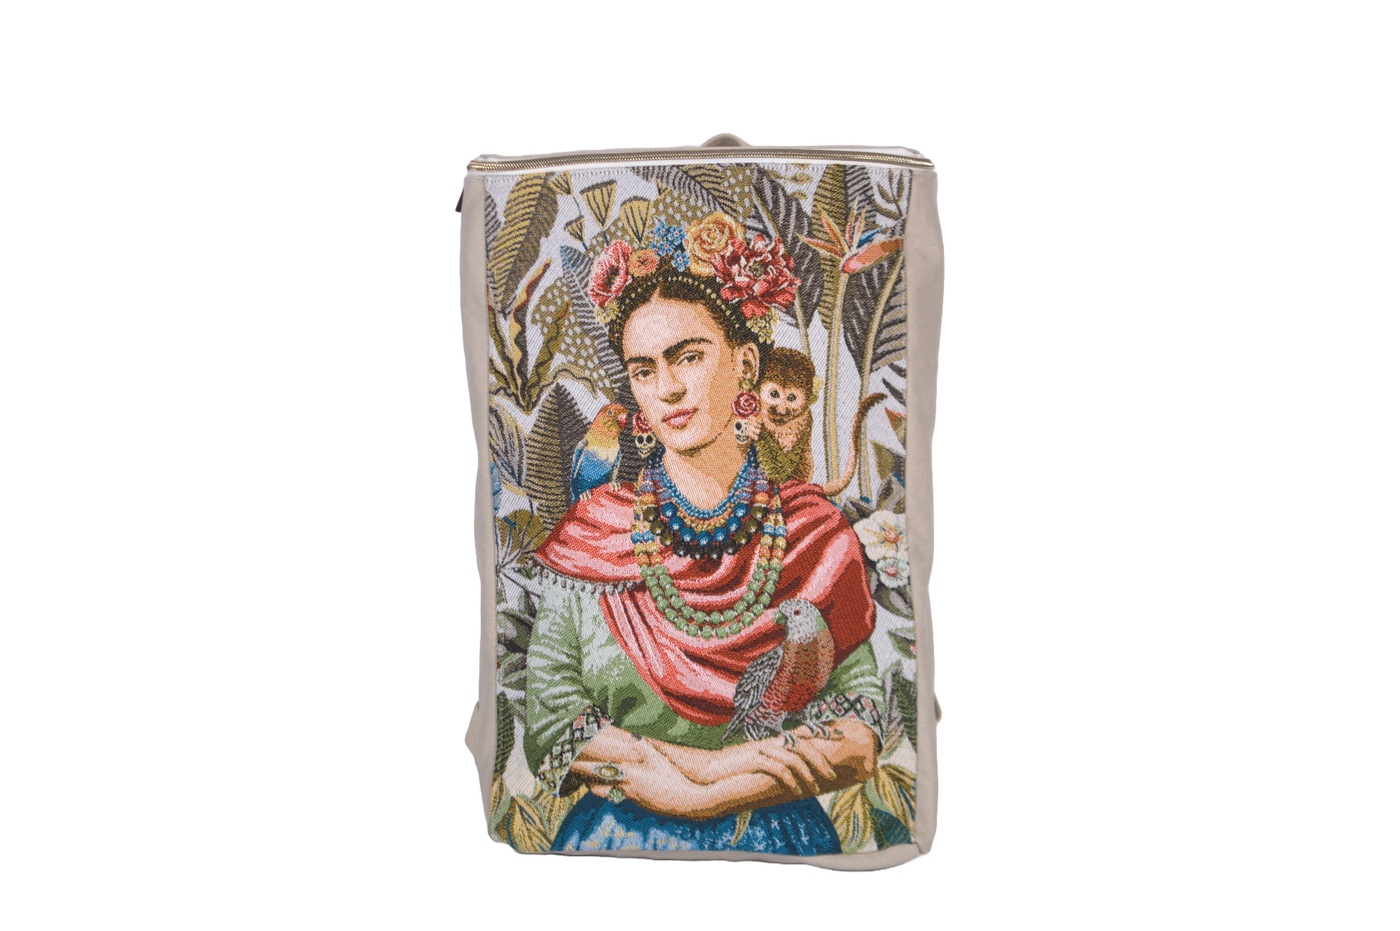 Frida Kahlo tubus